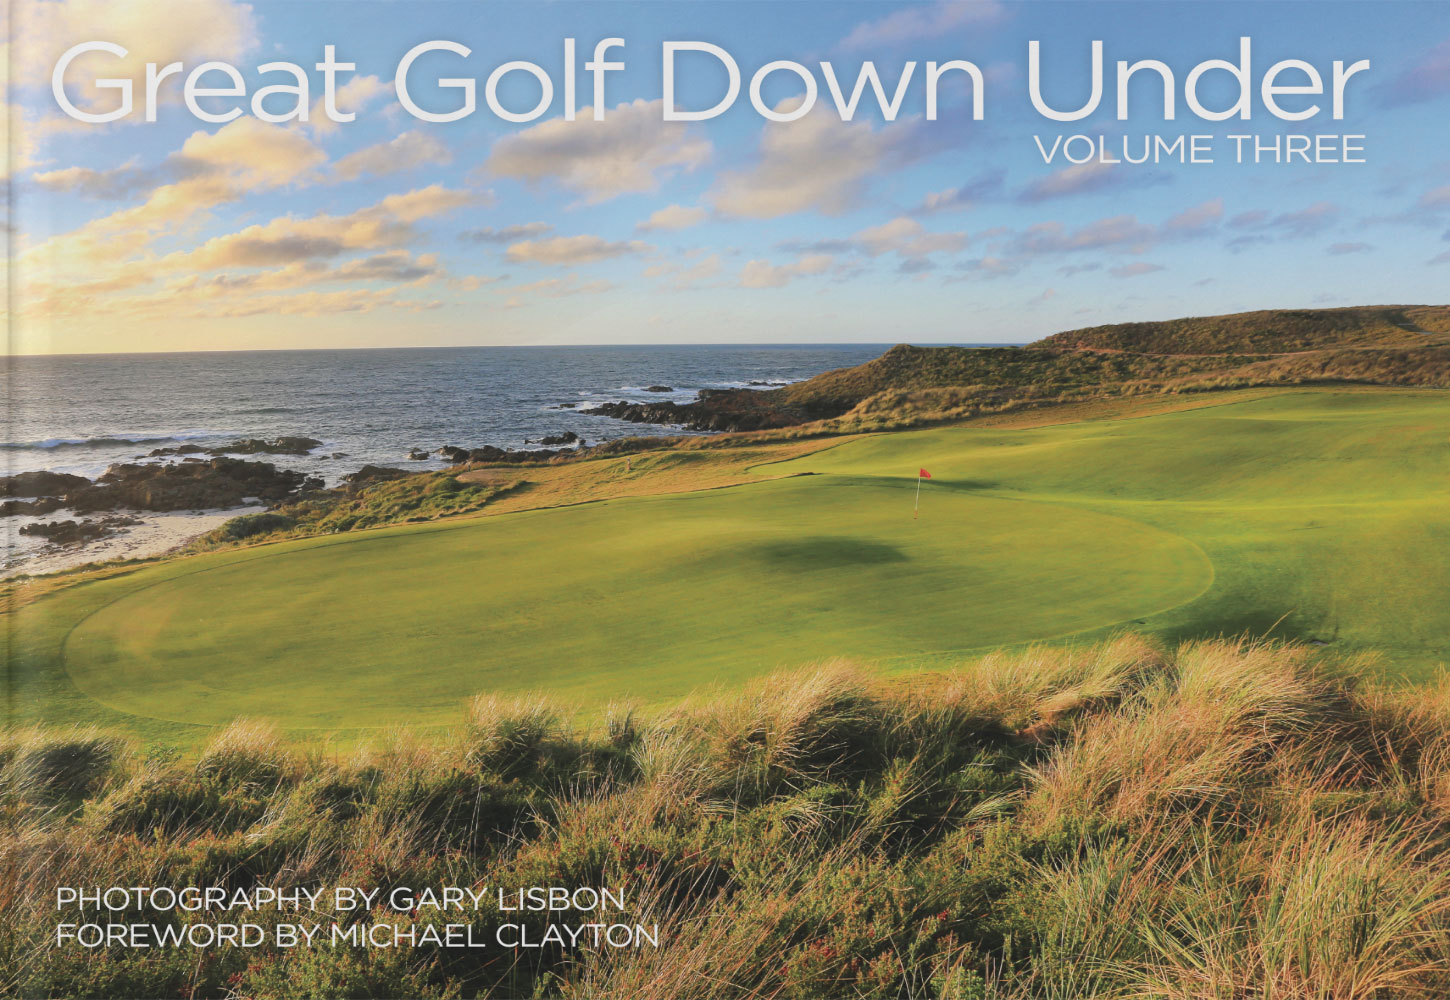 Great Golf Down Under Volume 3